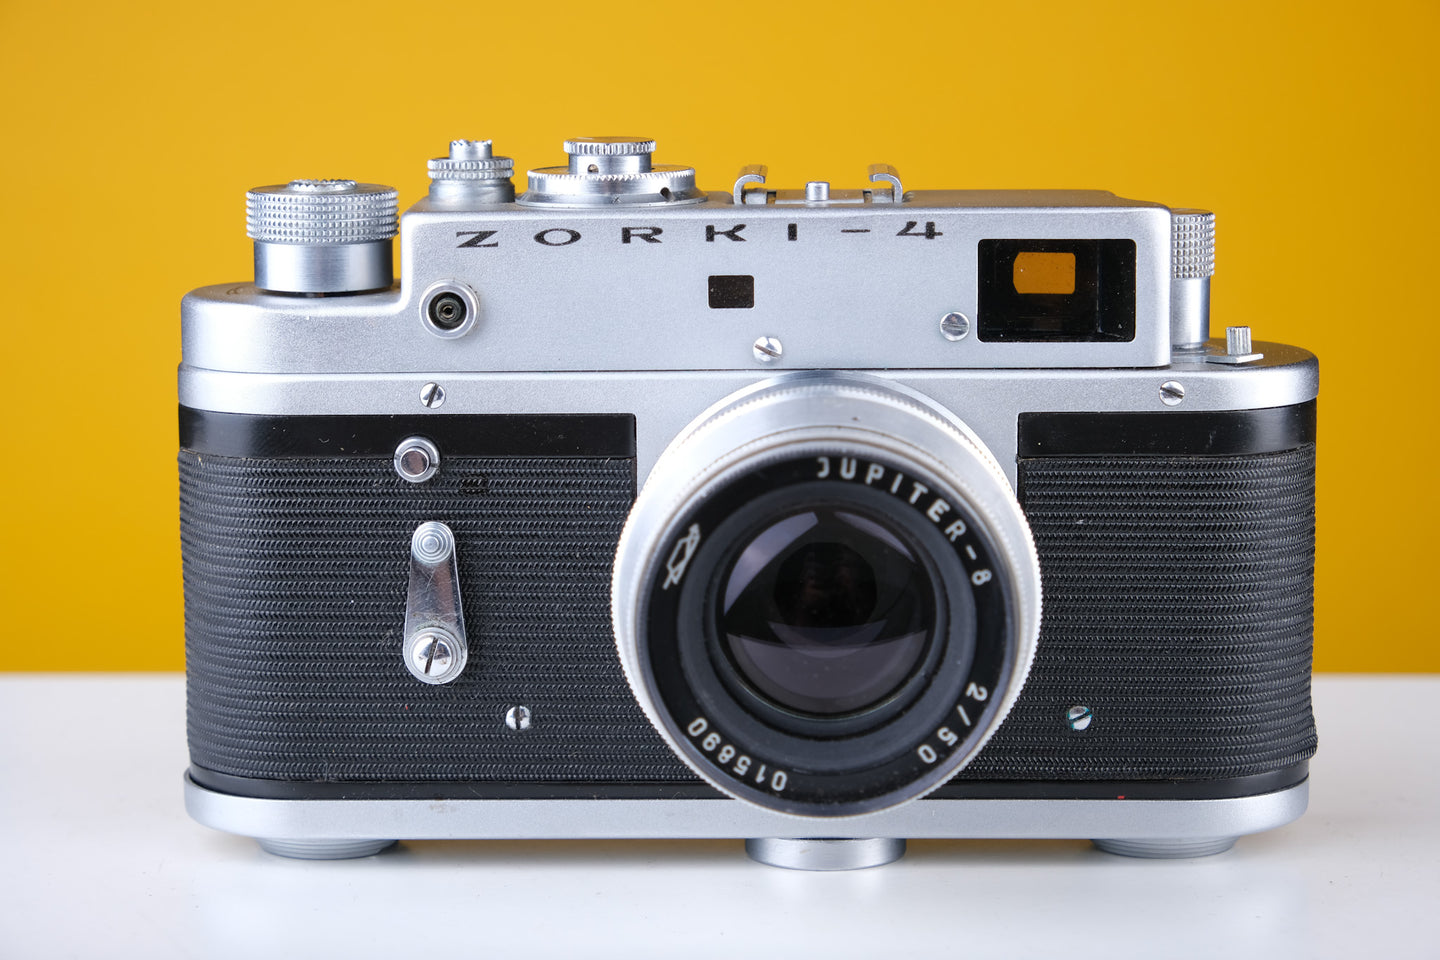 Zorki 4 35mm Rangefinder Film Camera with Jupiter 8 50mm f2 Lens